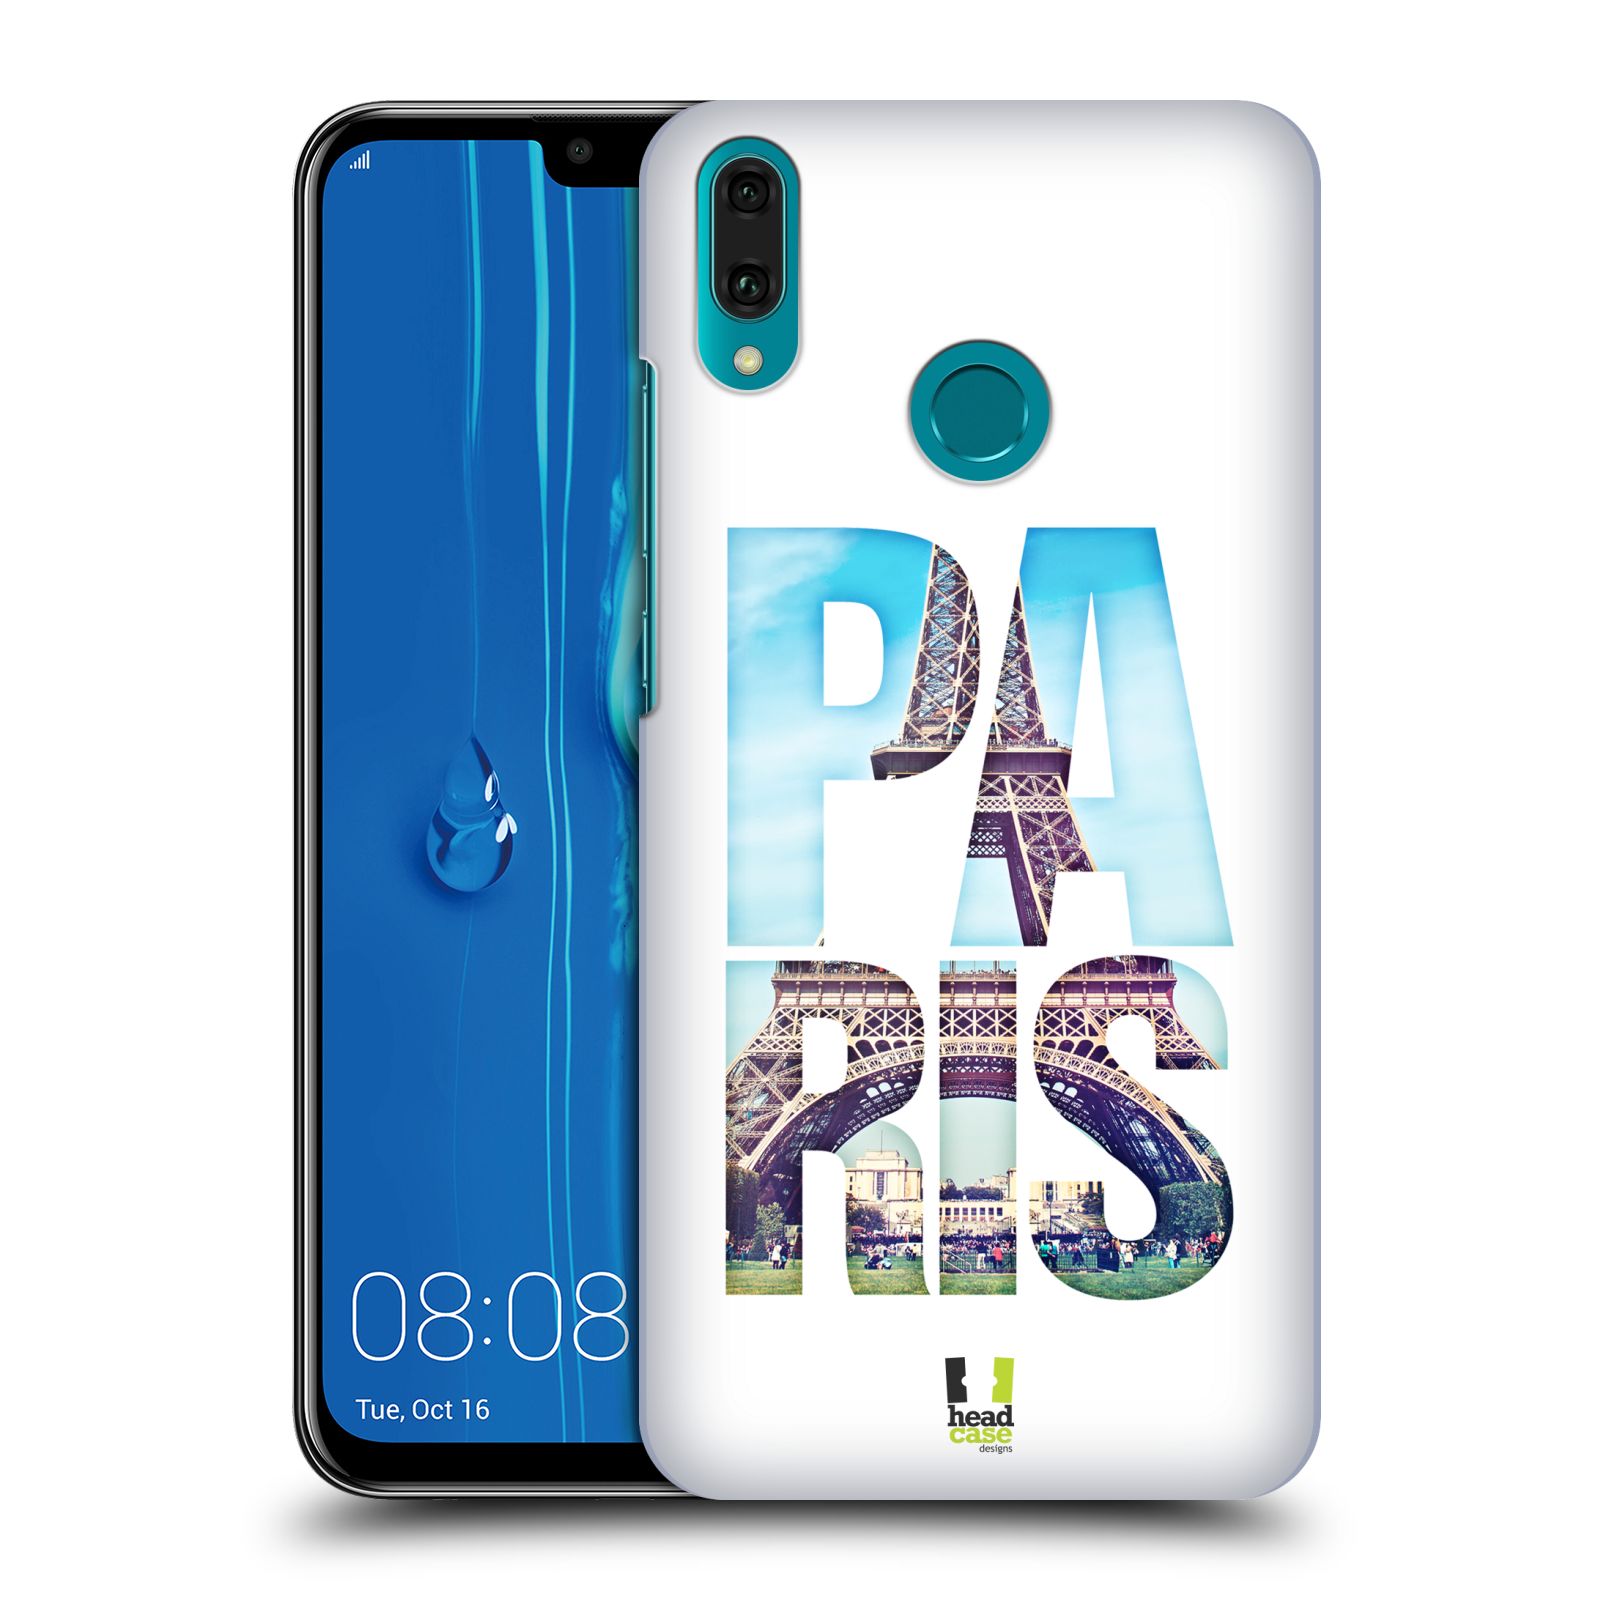 Pouzdro na mobil Huawei Y9 2019 - HEAD CASE - vzor Města foto a nadpis FRANCIE, PAŘÍŽ, EIFFELOVA VĚŽ